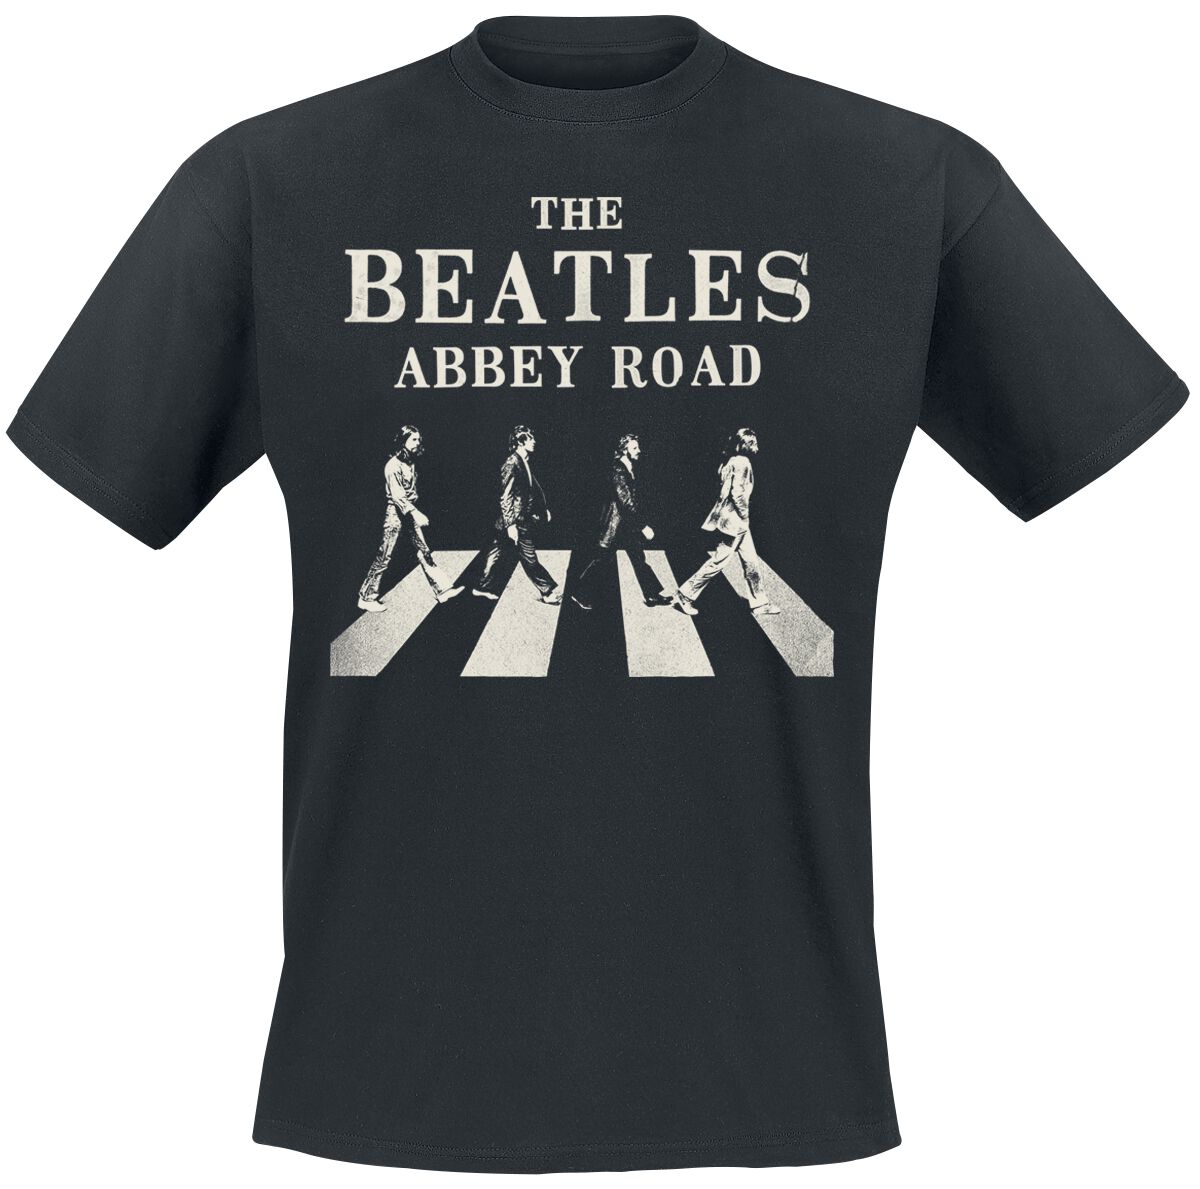 The Beatles T-Shirt - Abbey Road Sign - S bis 3XL - für Männer - Größe 3XL - schwarz  - Lizenziertes Merchandise!